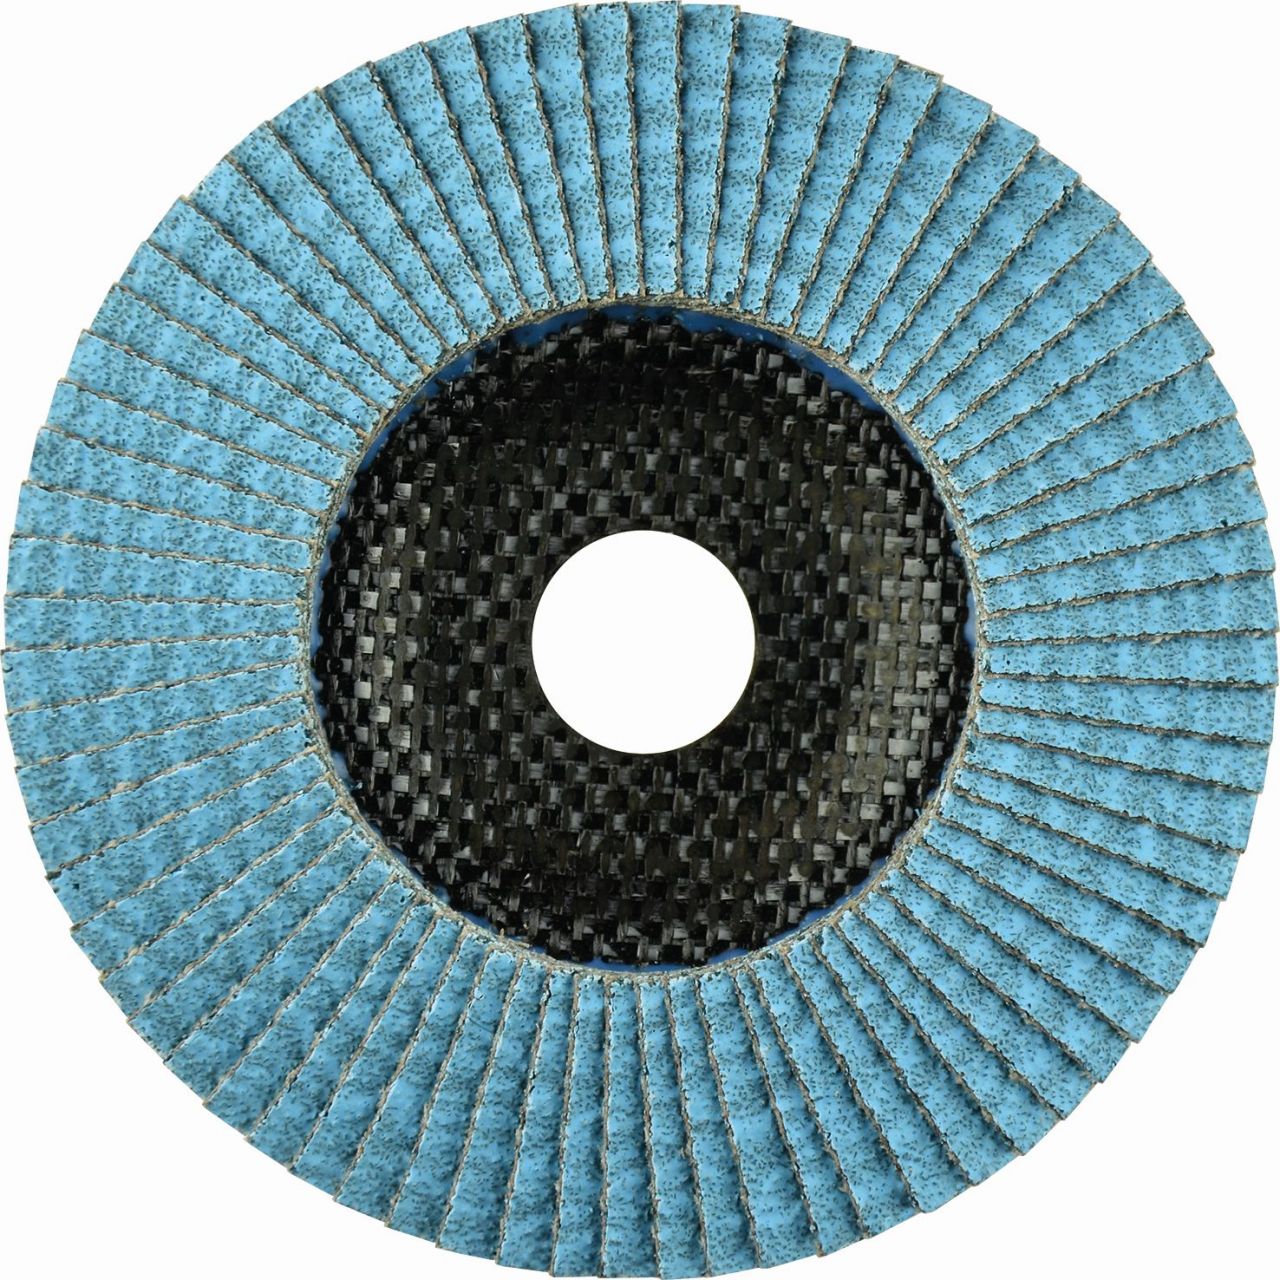 Disco de láminas abrasivo Zirconio ZIRCON MAXX de 125 mm grano 40 y base plana